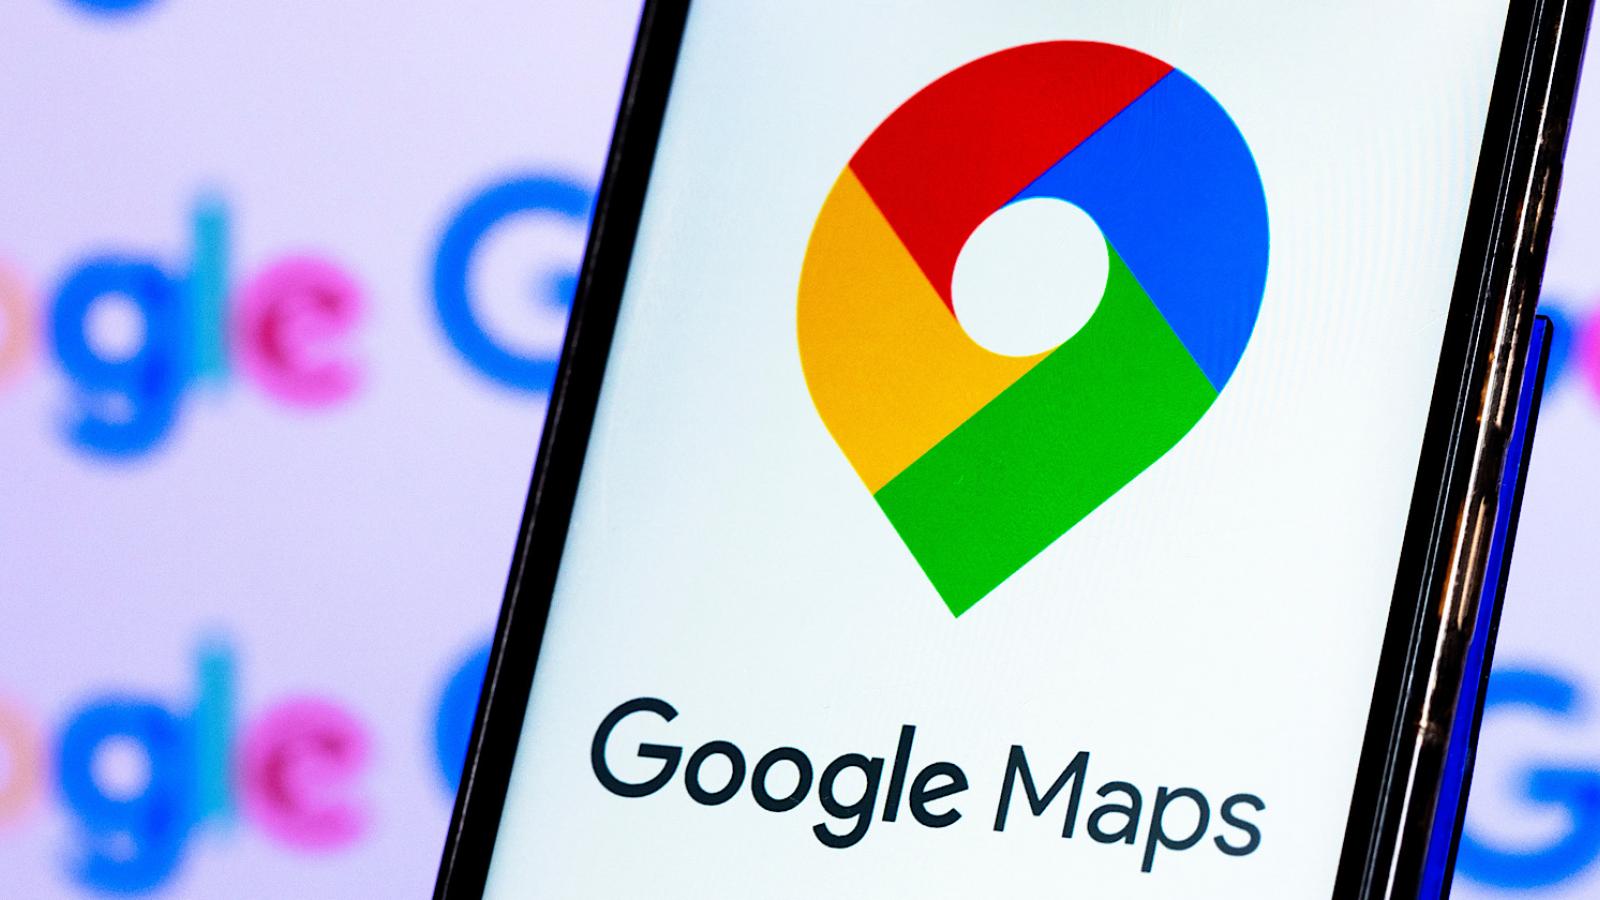 Οι νέες λειτουργίες του Google Maps που έρχονται και στην Ελλάδα